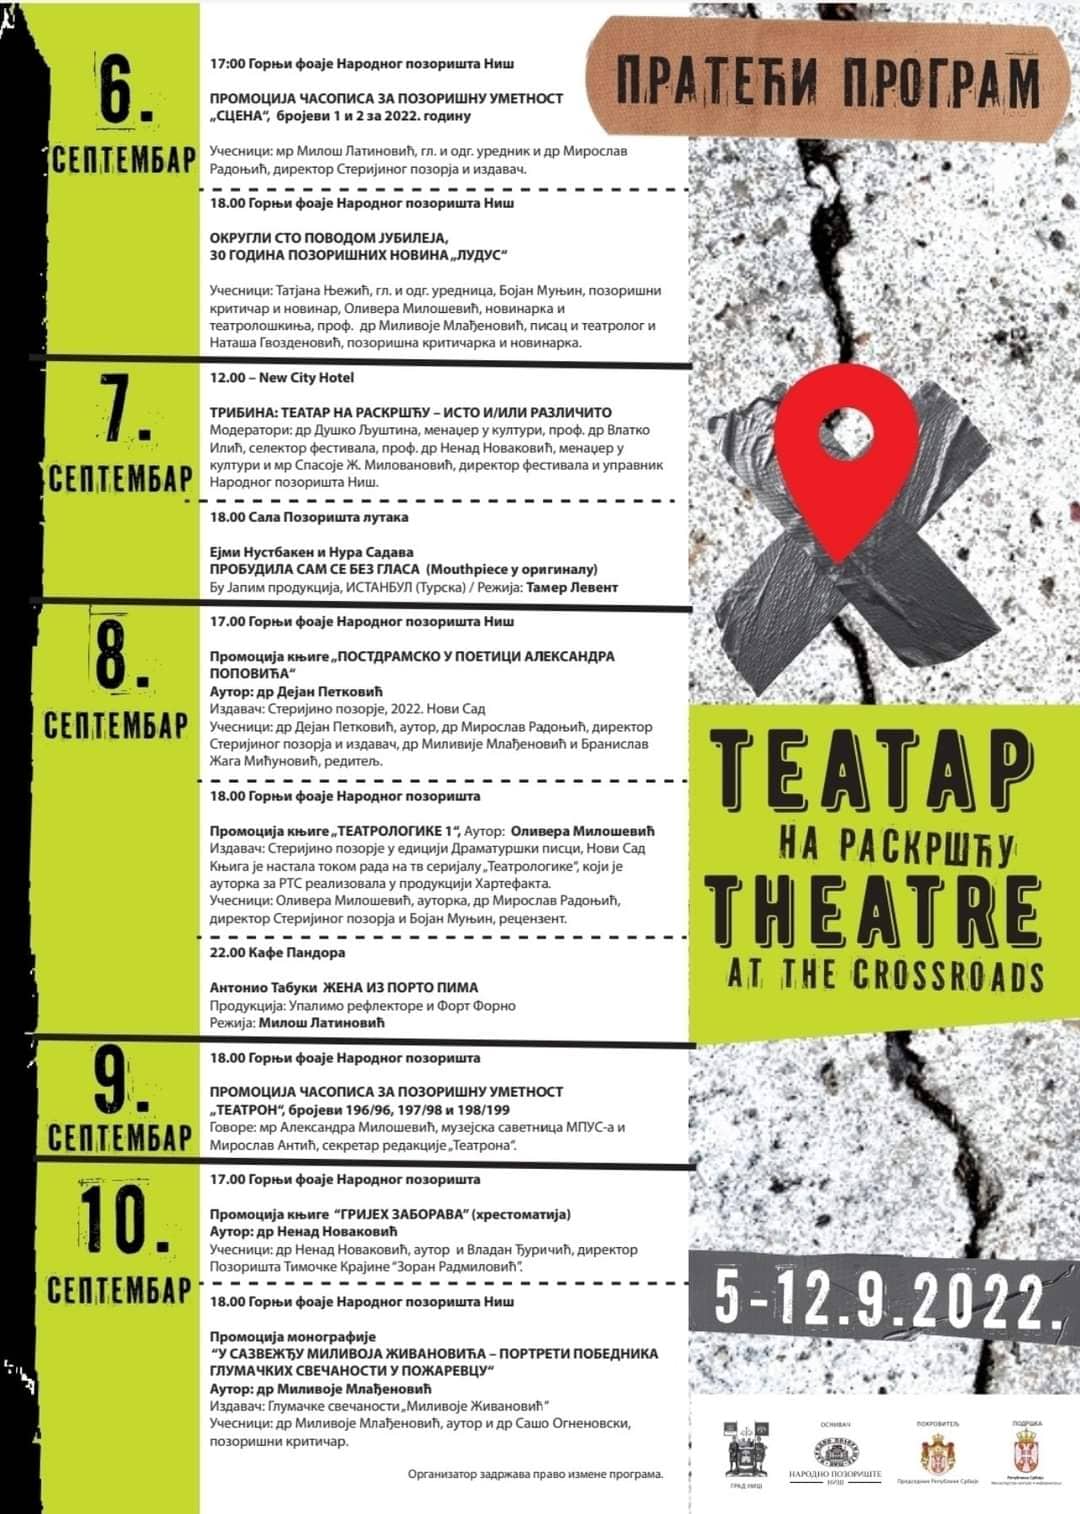 Večeras, sa sa projekcijom revijalne predstave Oslobođenje Skoplja, počinje treći po redu festival Teatar na raskršću. 